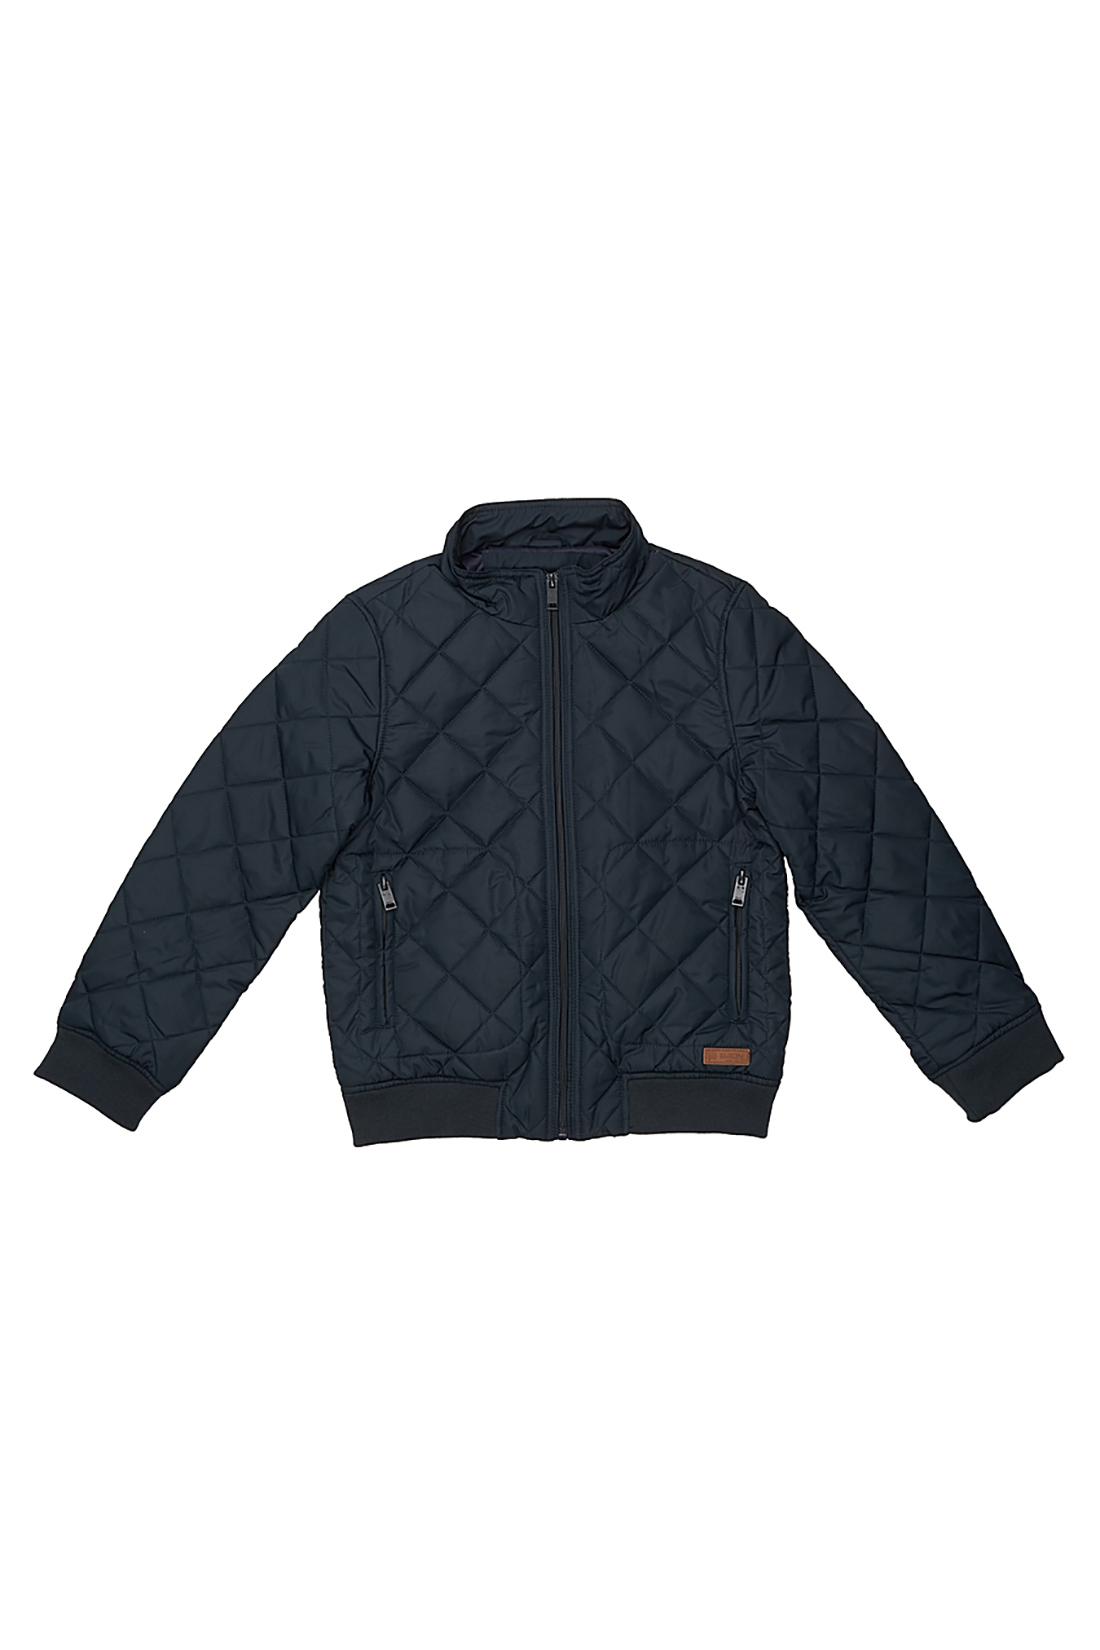 Куртка для мальчика (арт. baon BJ538005), размер 134-140, цвет синий Куртка для мальчика (арт. baon BJ538005) - фото 4